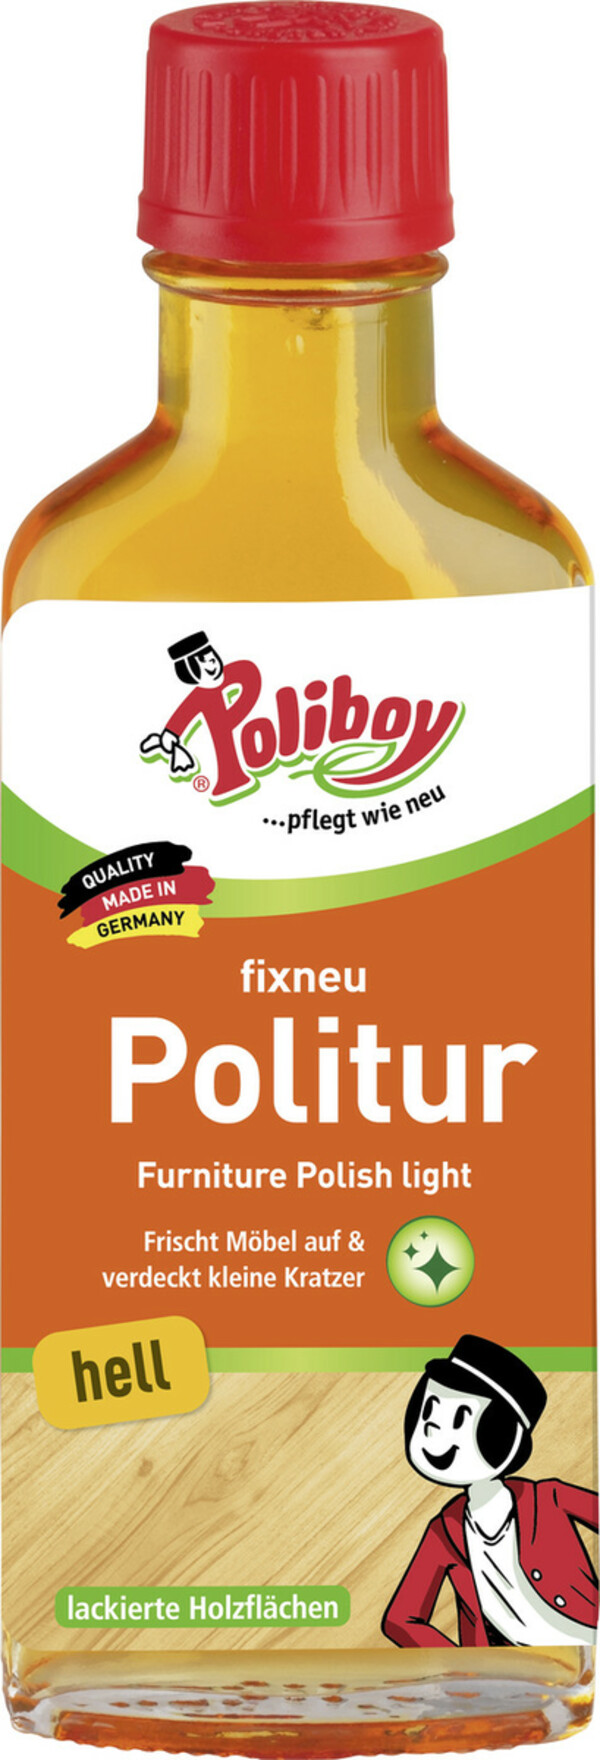 Bild 1 von Poliboy Fixneu Politur hell 100ML